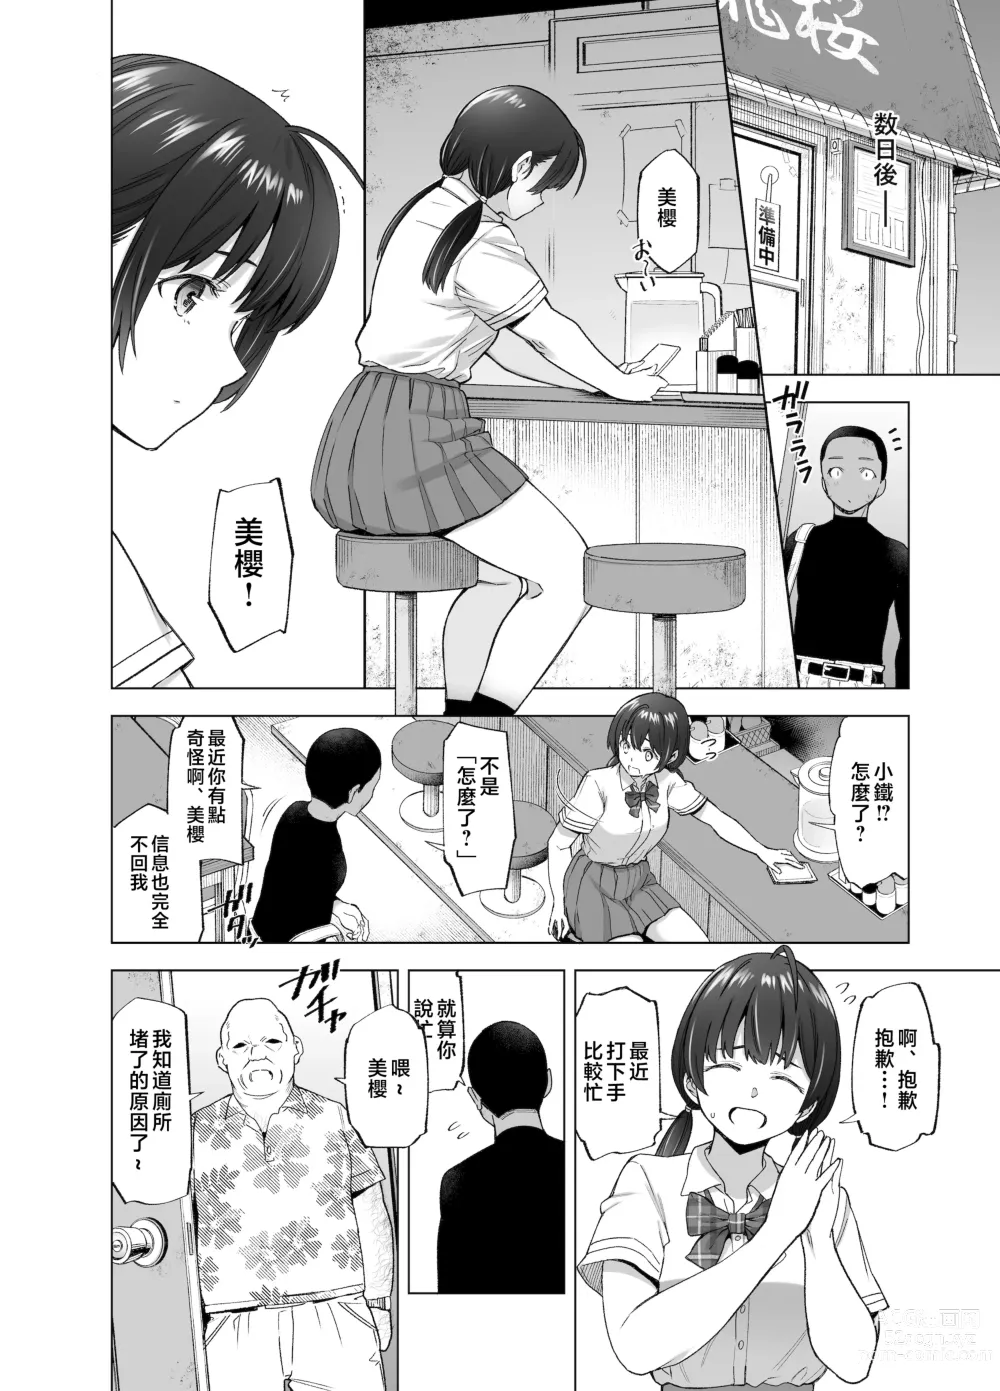 Page 33 of doujinshi Sakura Saku Chiru Hanabira Tsubomi Hokorobibu ~Ossan no Nikutsubo e to Ochi Hateta Saiai no Osananajimi Yoshioka Mio~